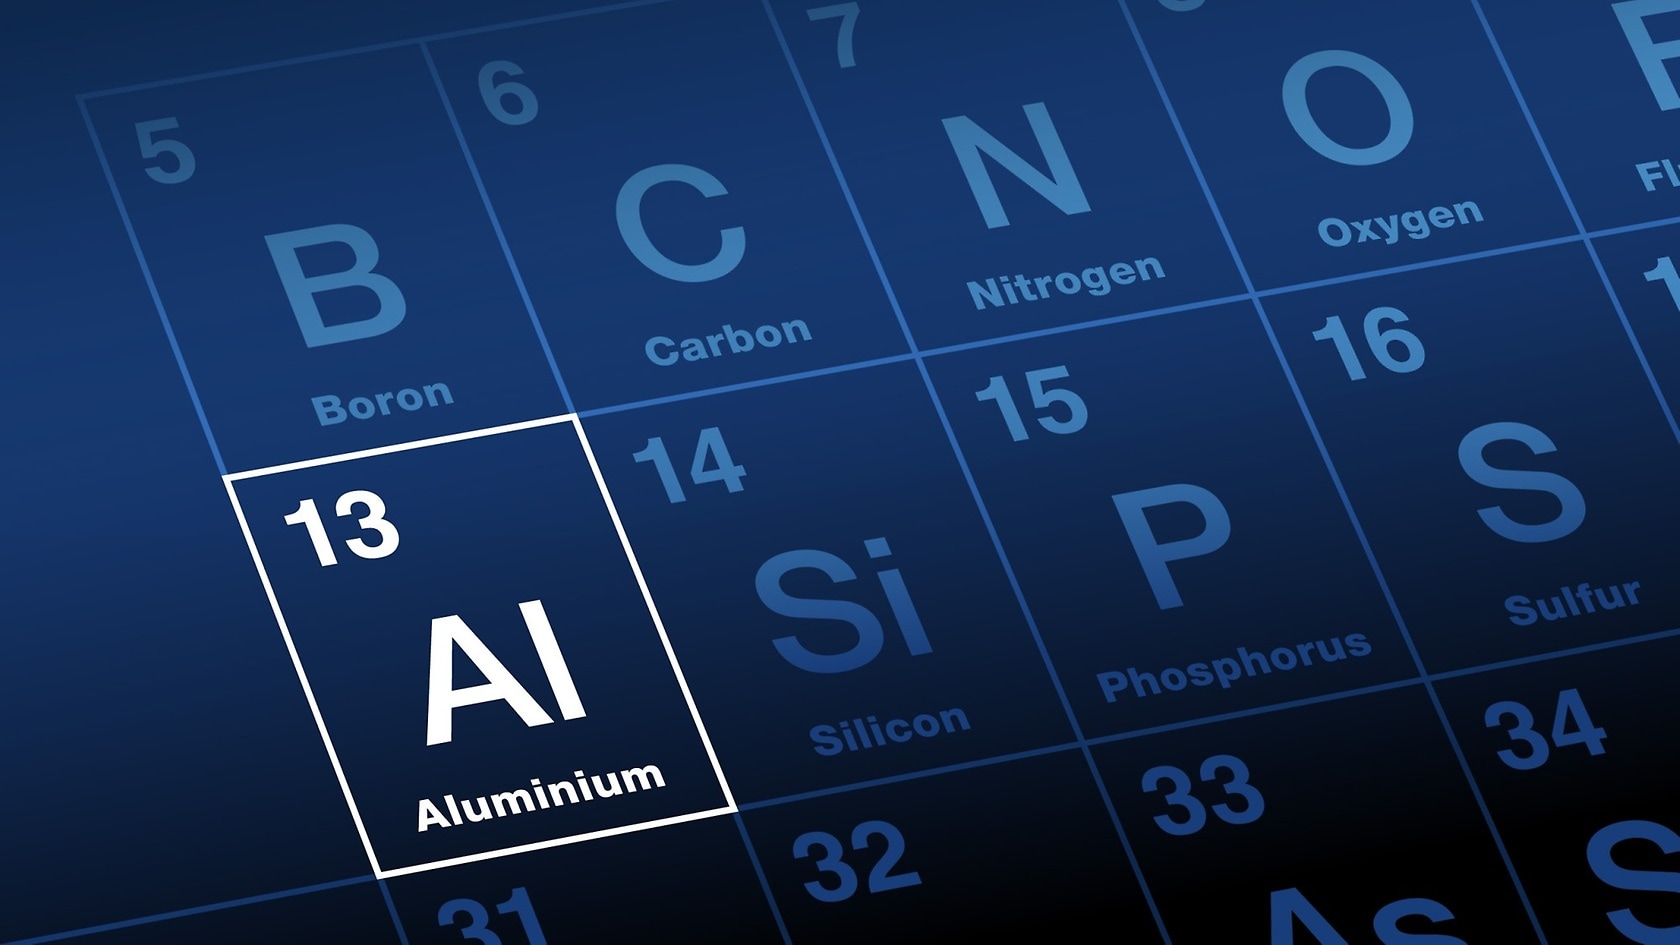 Aluminium in the periodic table.